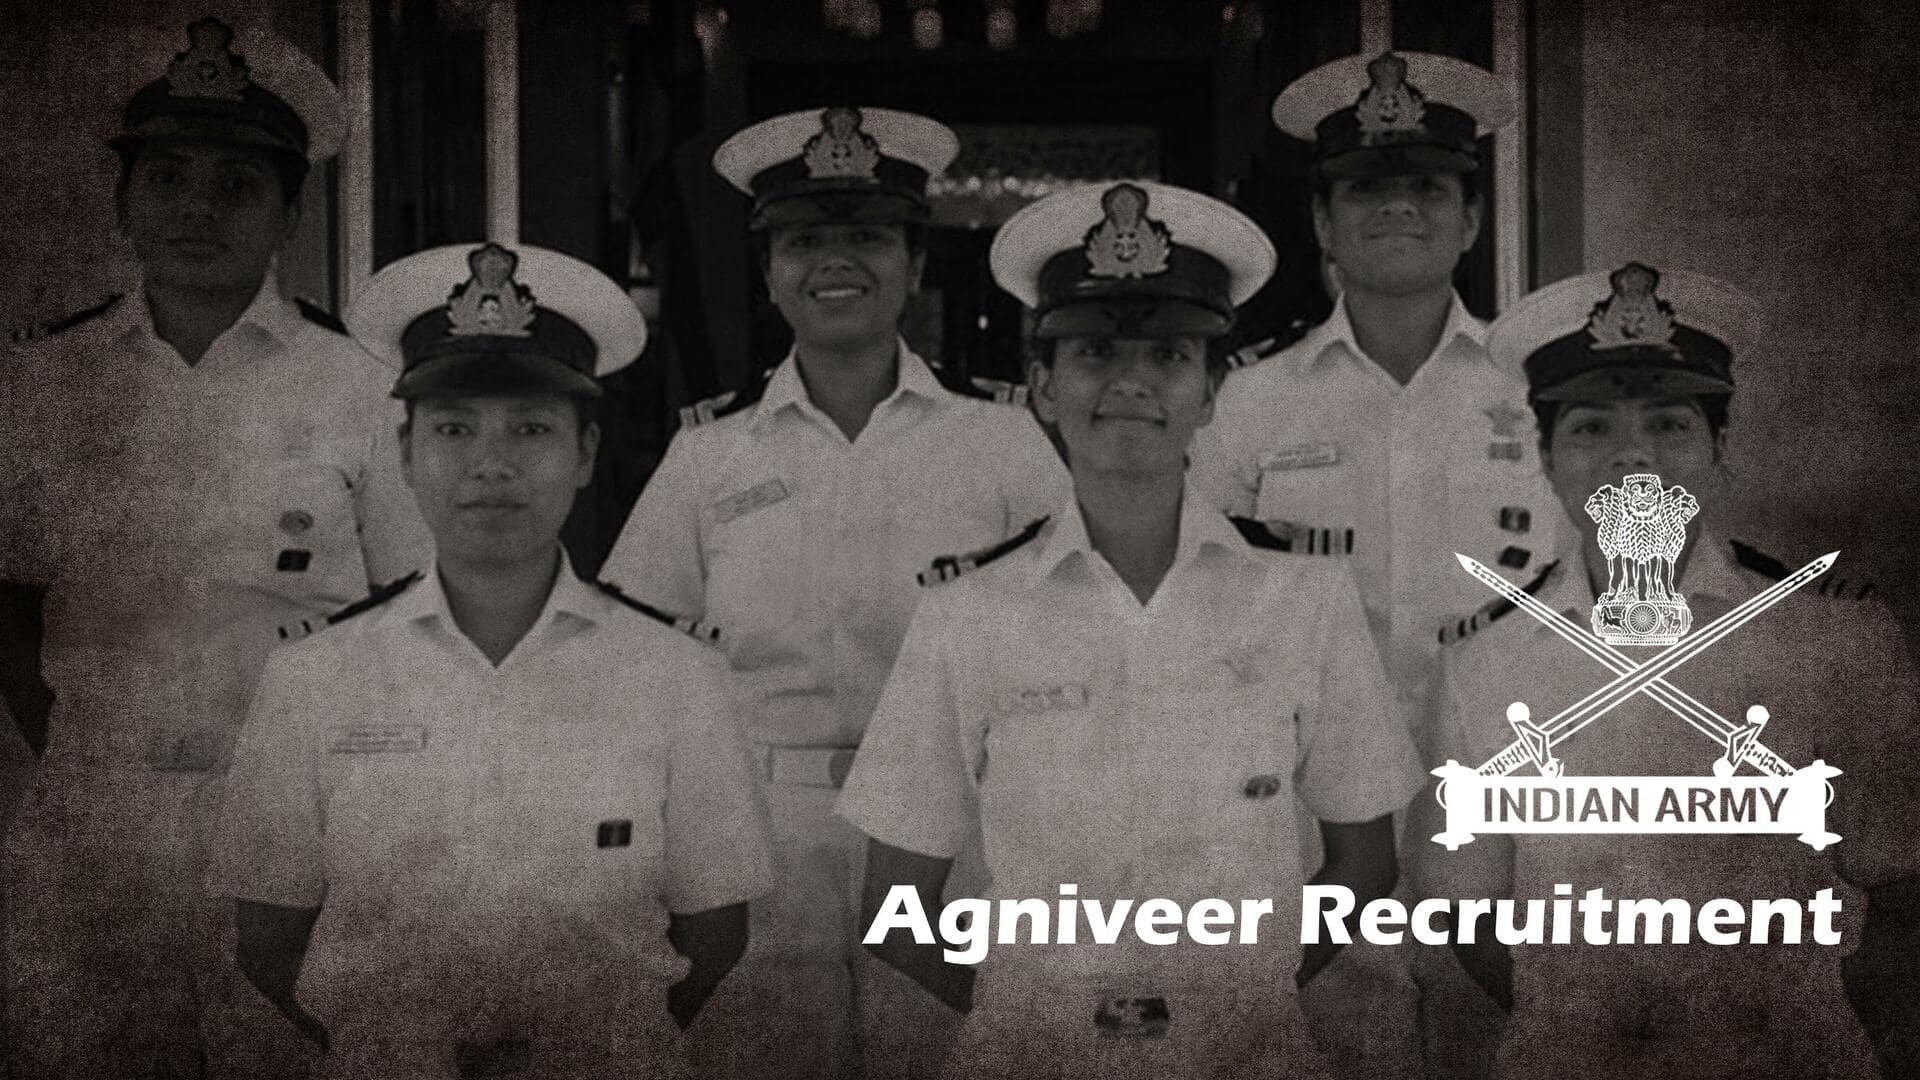 273 महिलाओं सहित नौसेना में शामिल हुआ अग्निवीरों का पहला बैच, नौसेना प्रमुख ने ली सलामी 